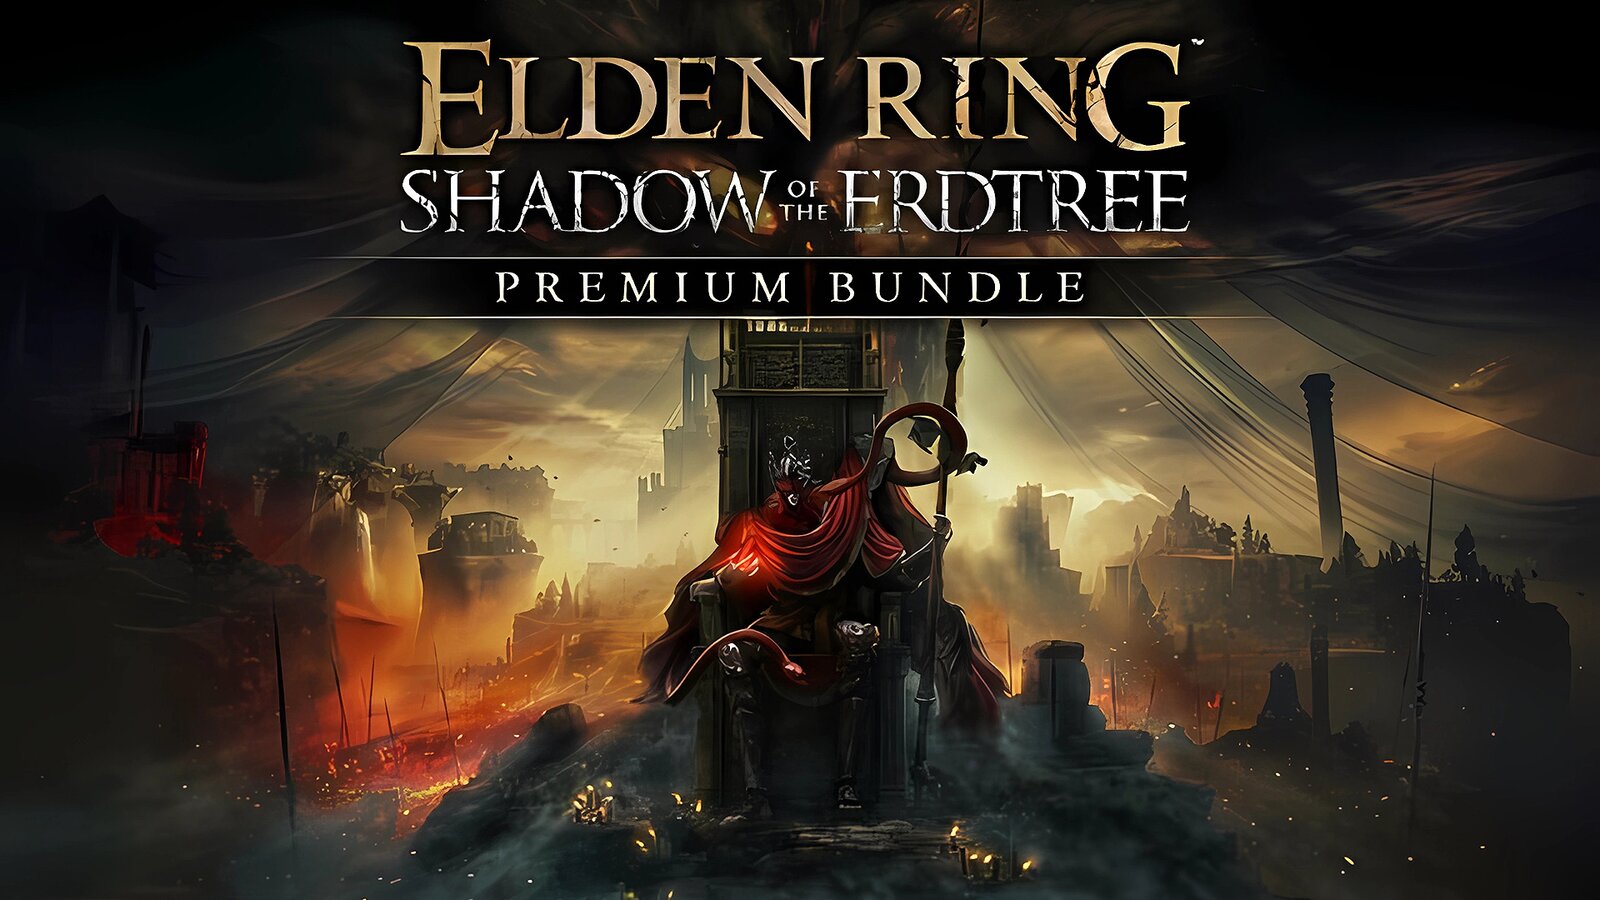 Elden Ring - Shadow of the Erdtree Premium Bundle